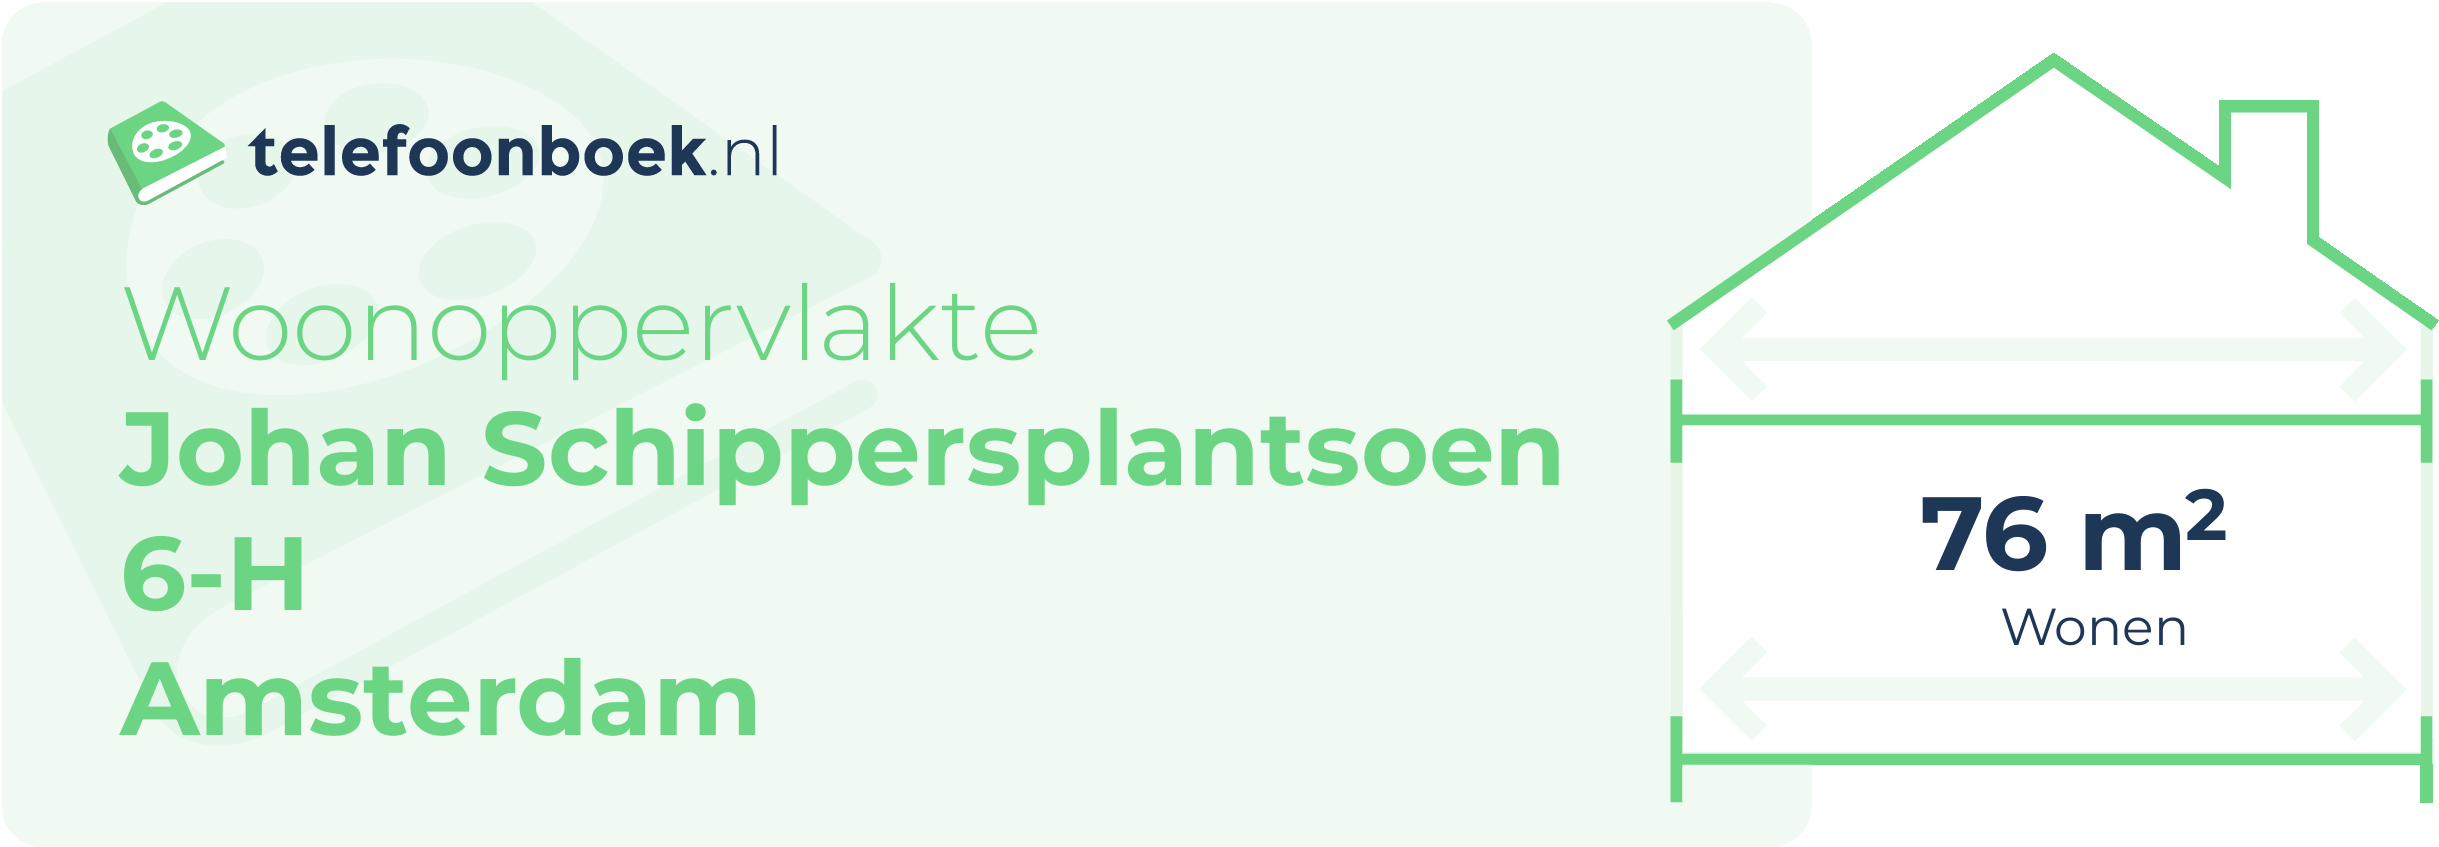 Woonoppervlakte Johan Schippersplantsoen 6-H Amsterdam